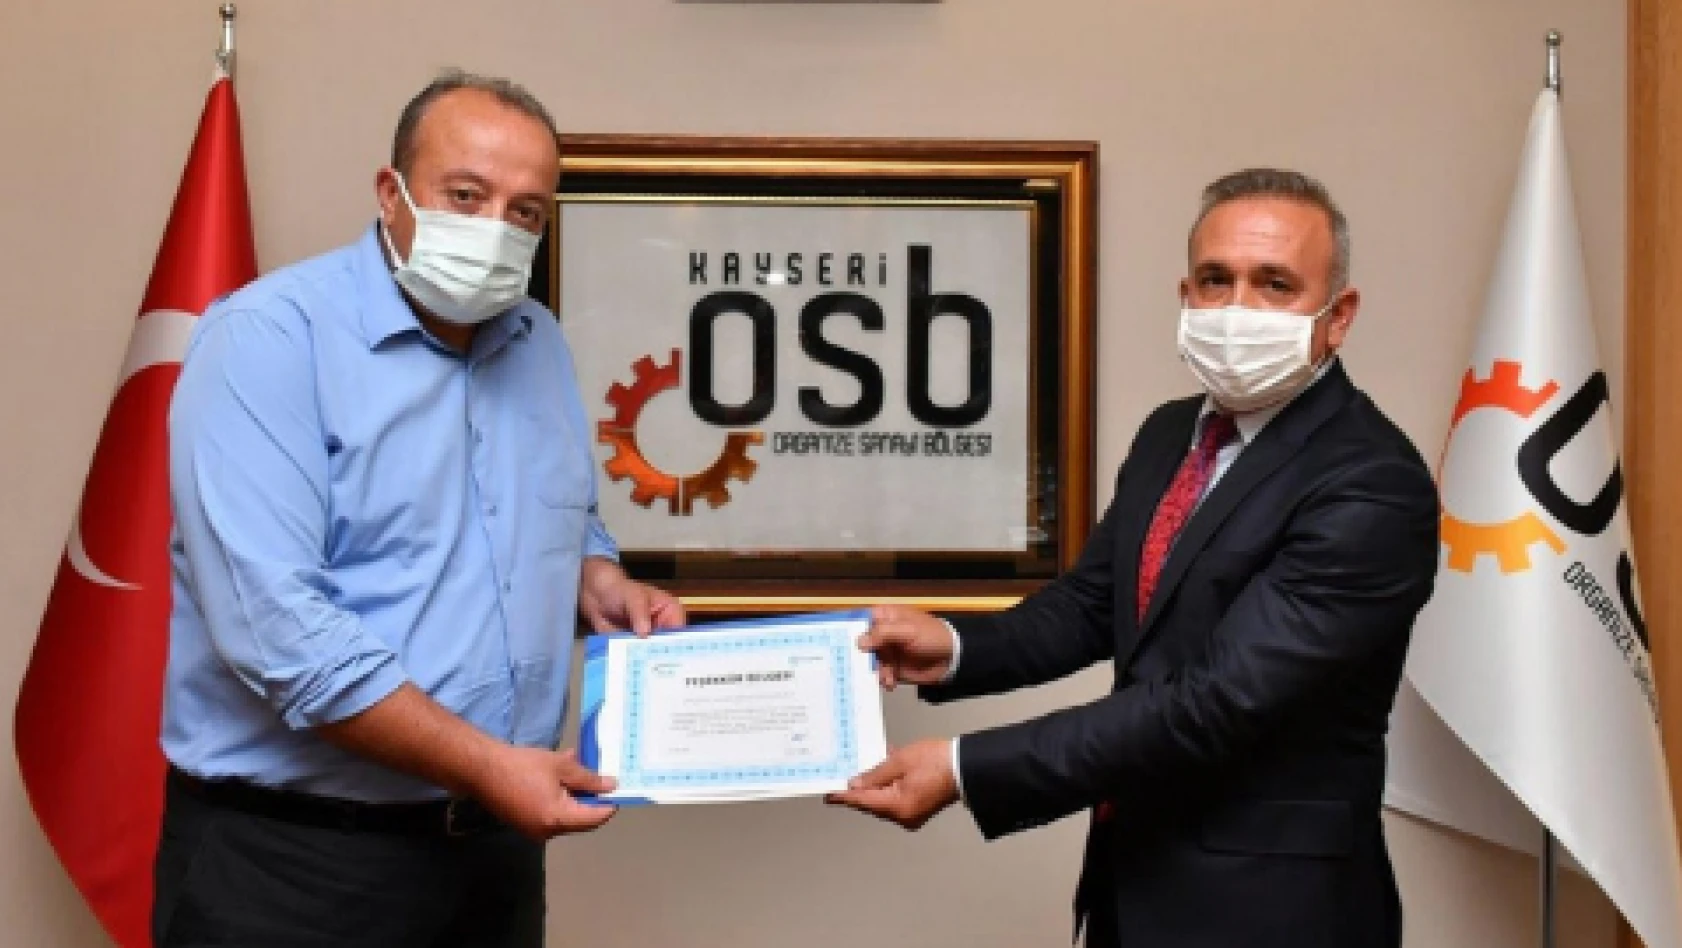 SGK'dan Kayseri OSB'ye teşekkür